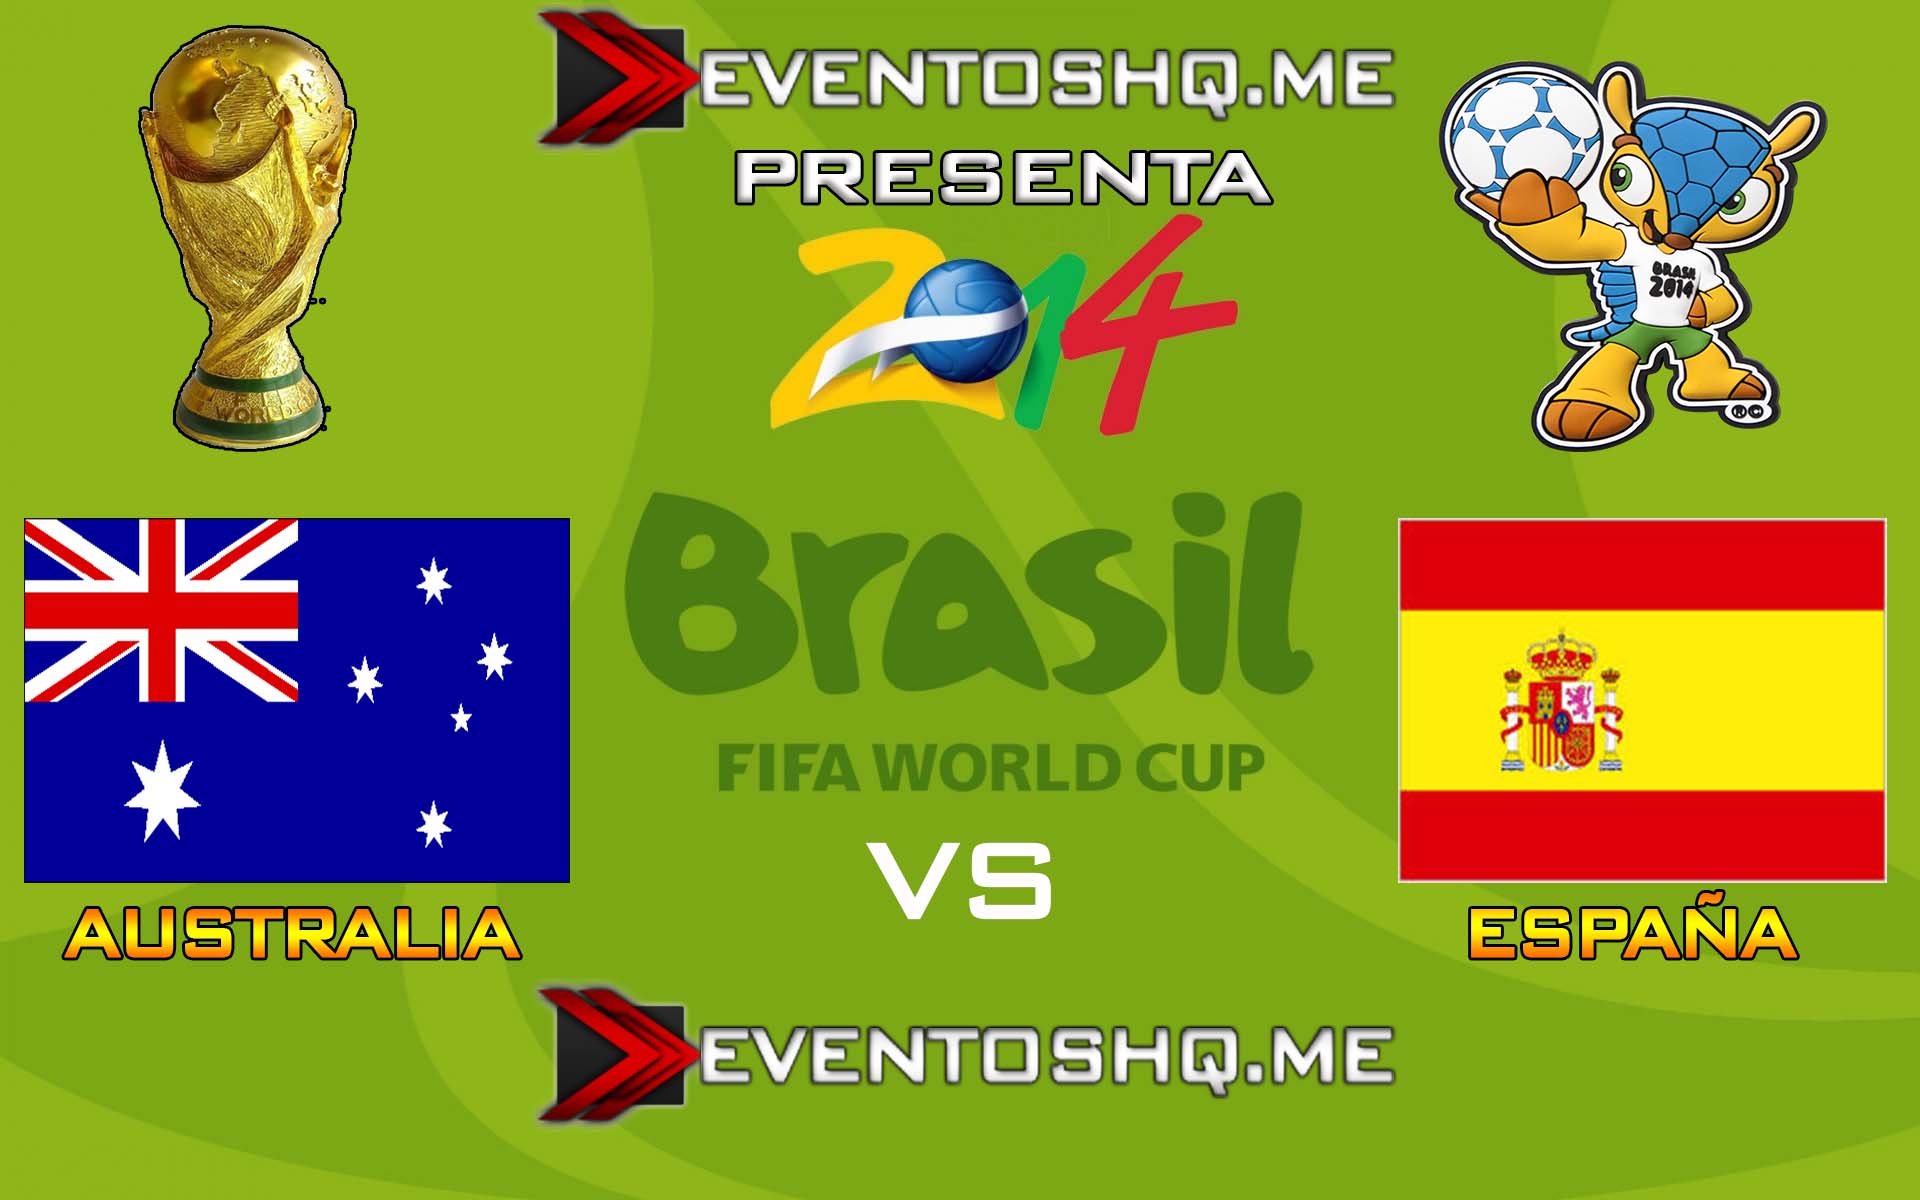 Ver en Vivo Australia vs España Mundial Brasil 2014 www.eventoshq.me